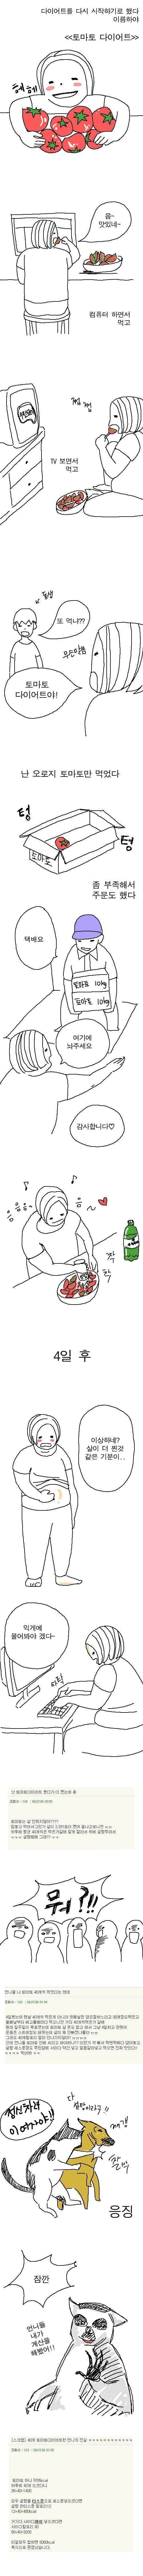 토마토 다이어트 레전드 후기...jpg